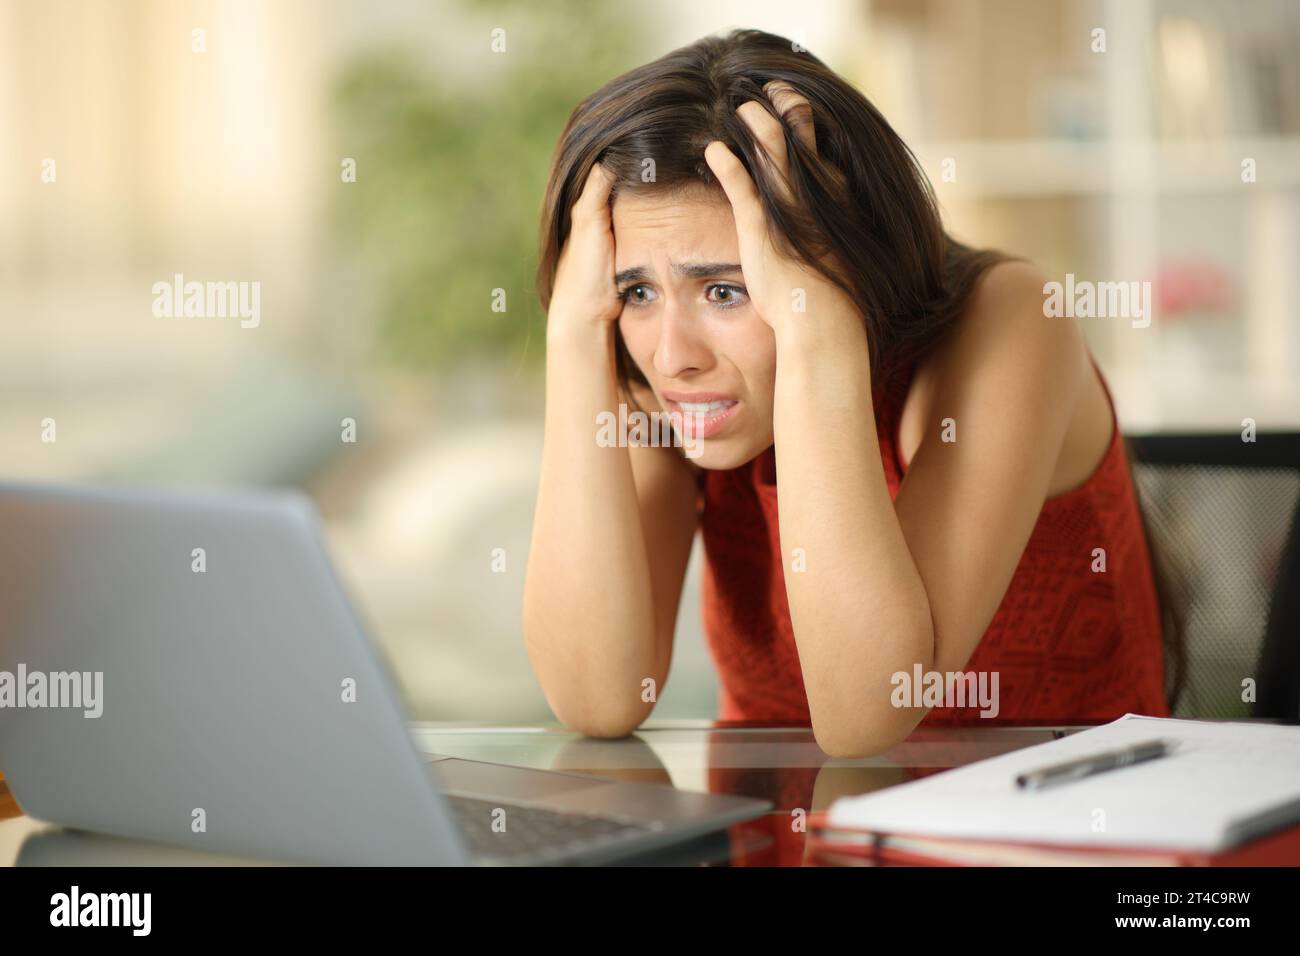 Verängstigter Student, der zu Hause schlechte Nachrichten auf dem Laptop liest Stockfoto